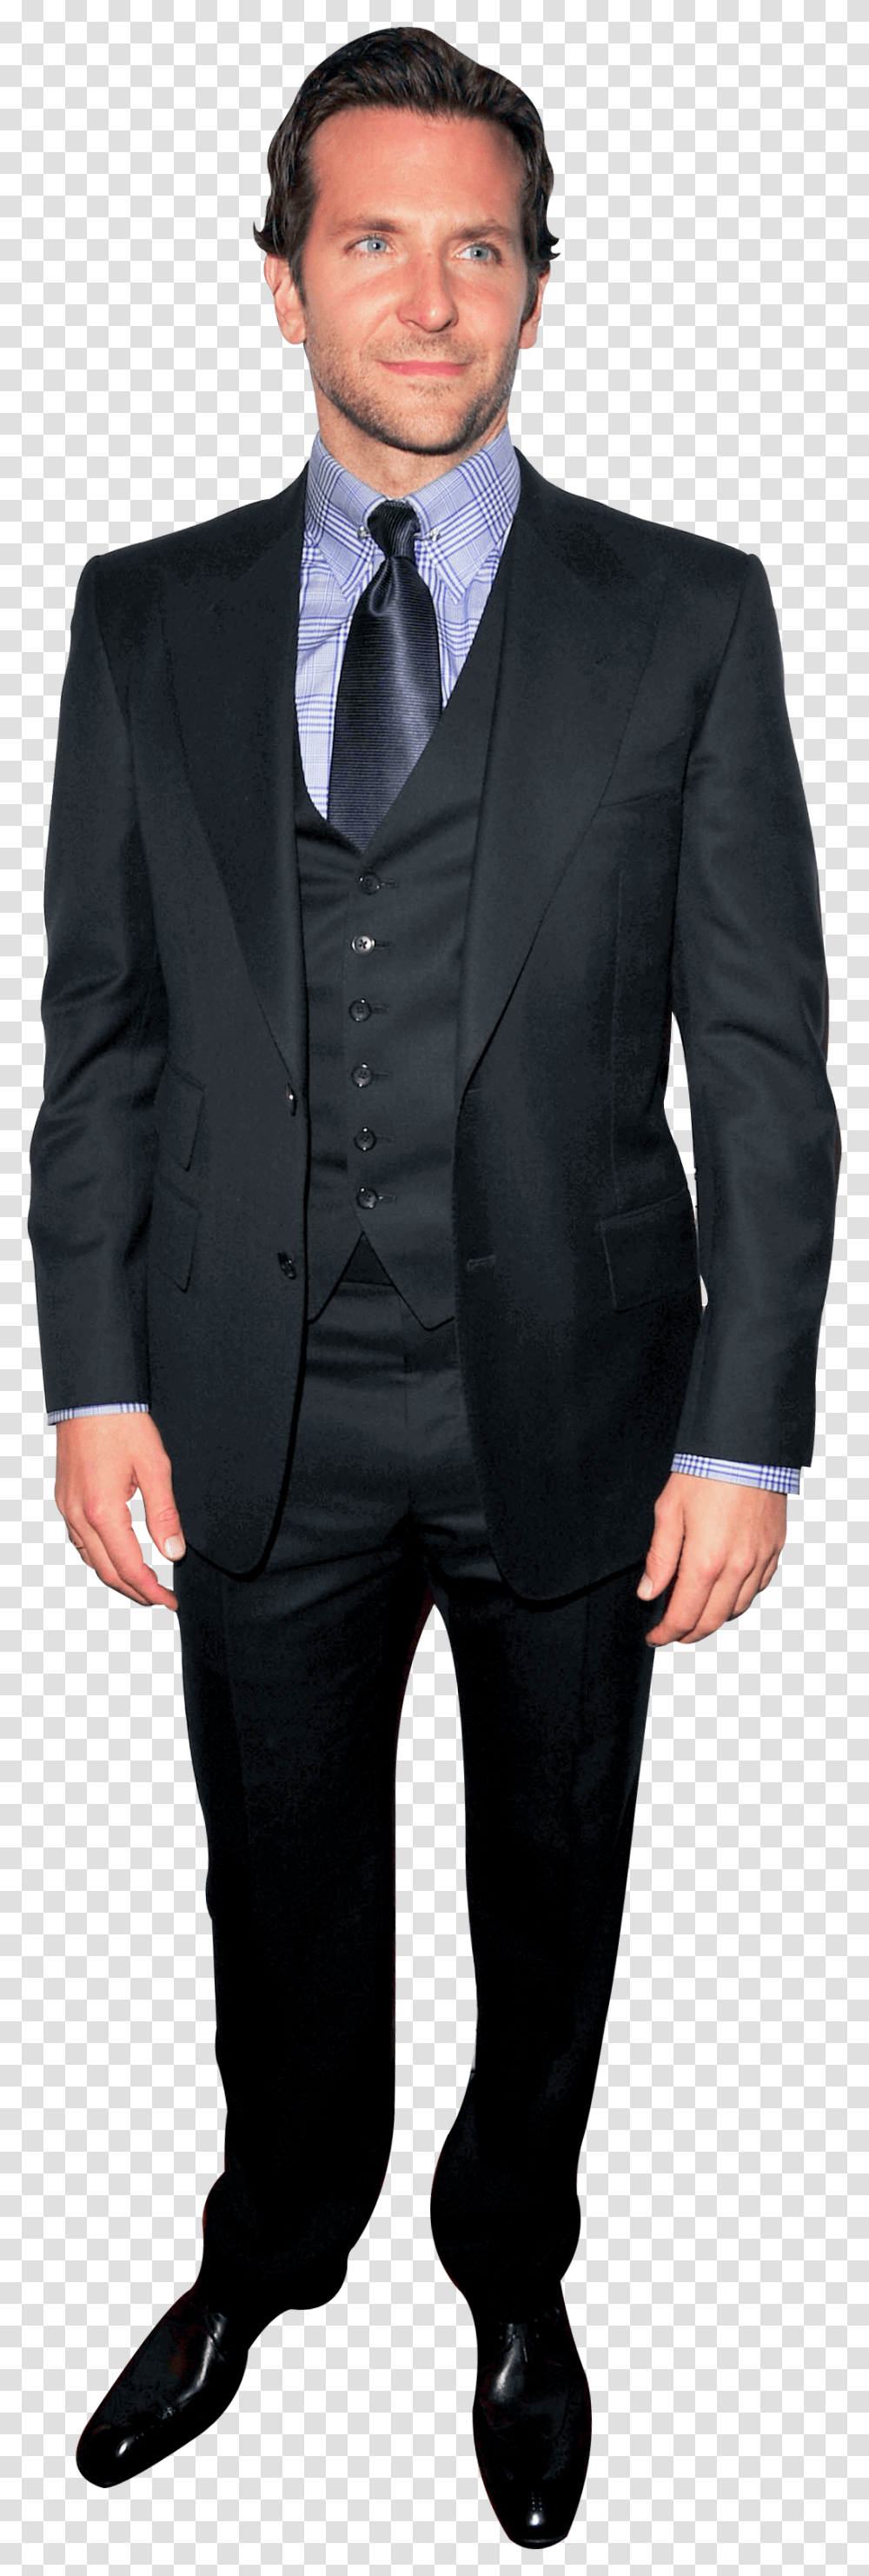 Tuxedo, Suit, Overcoat, Tie Transparent Png